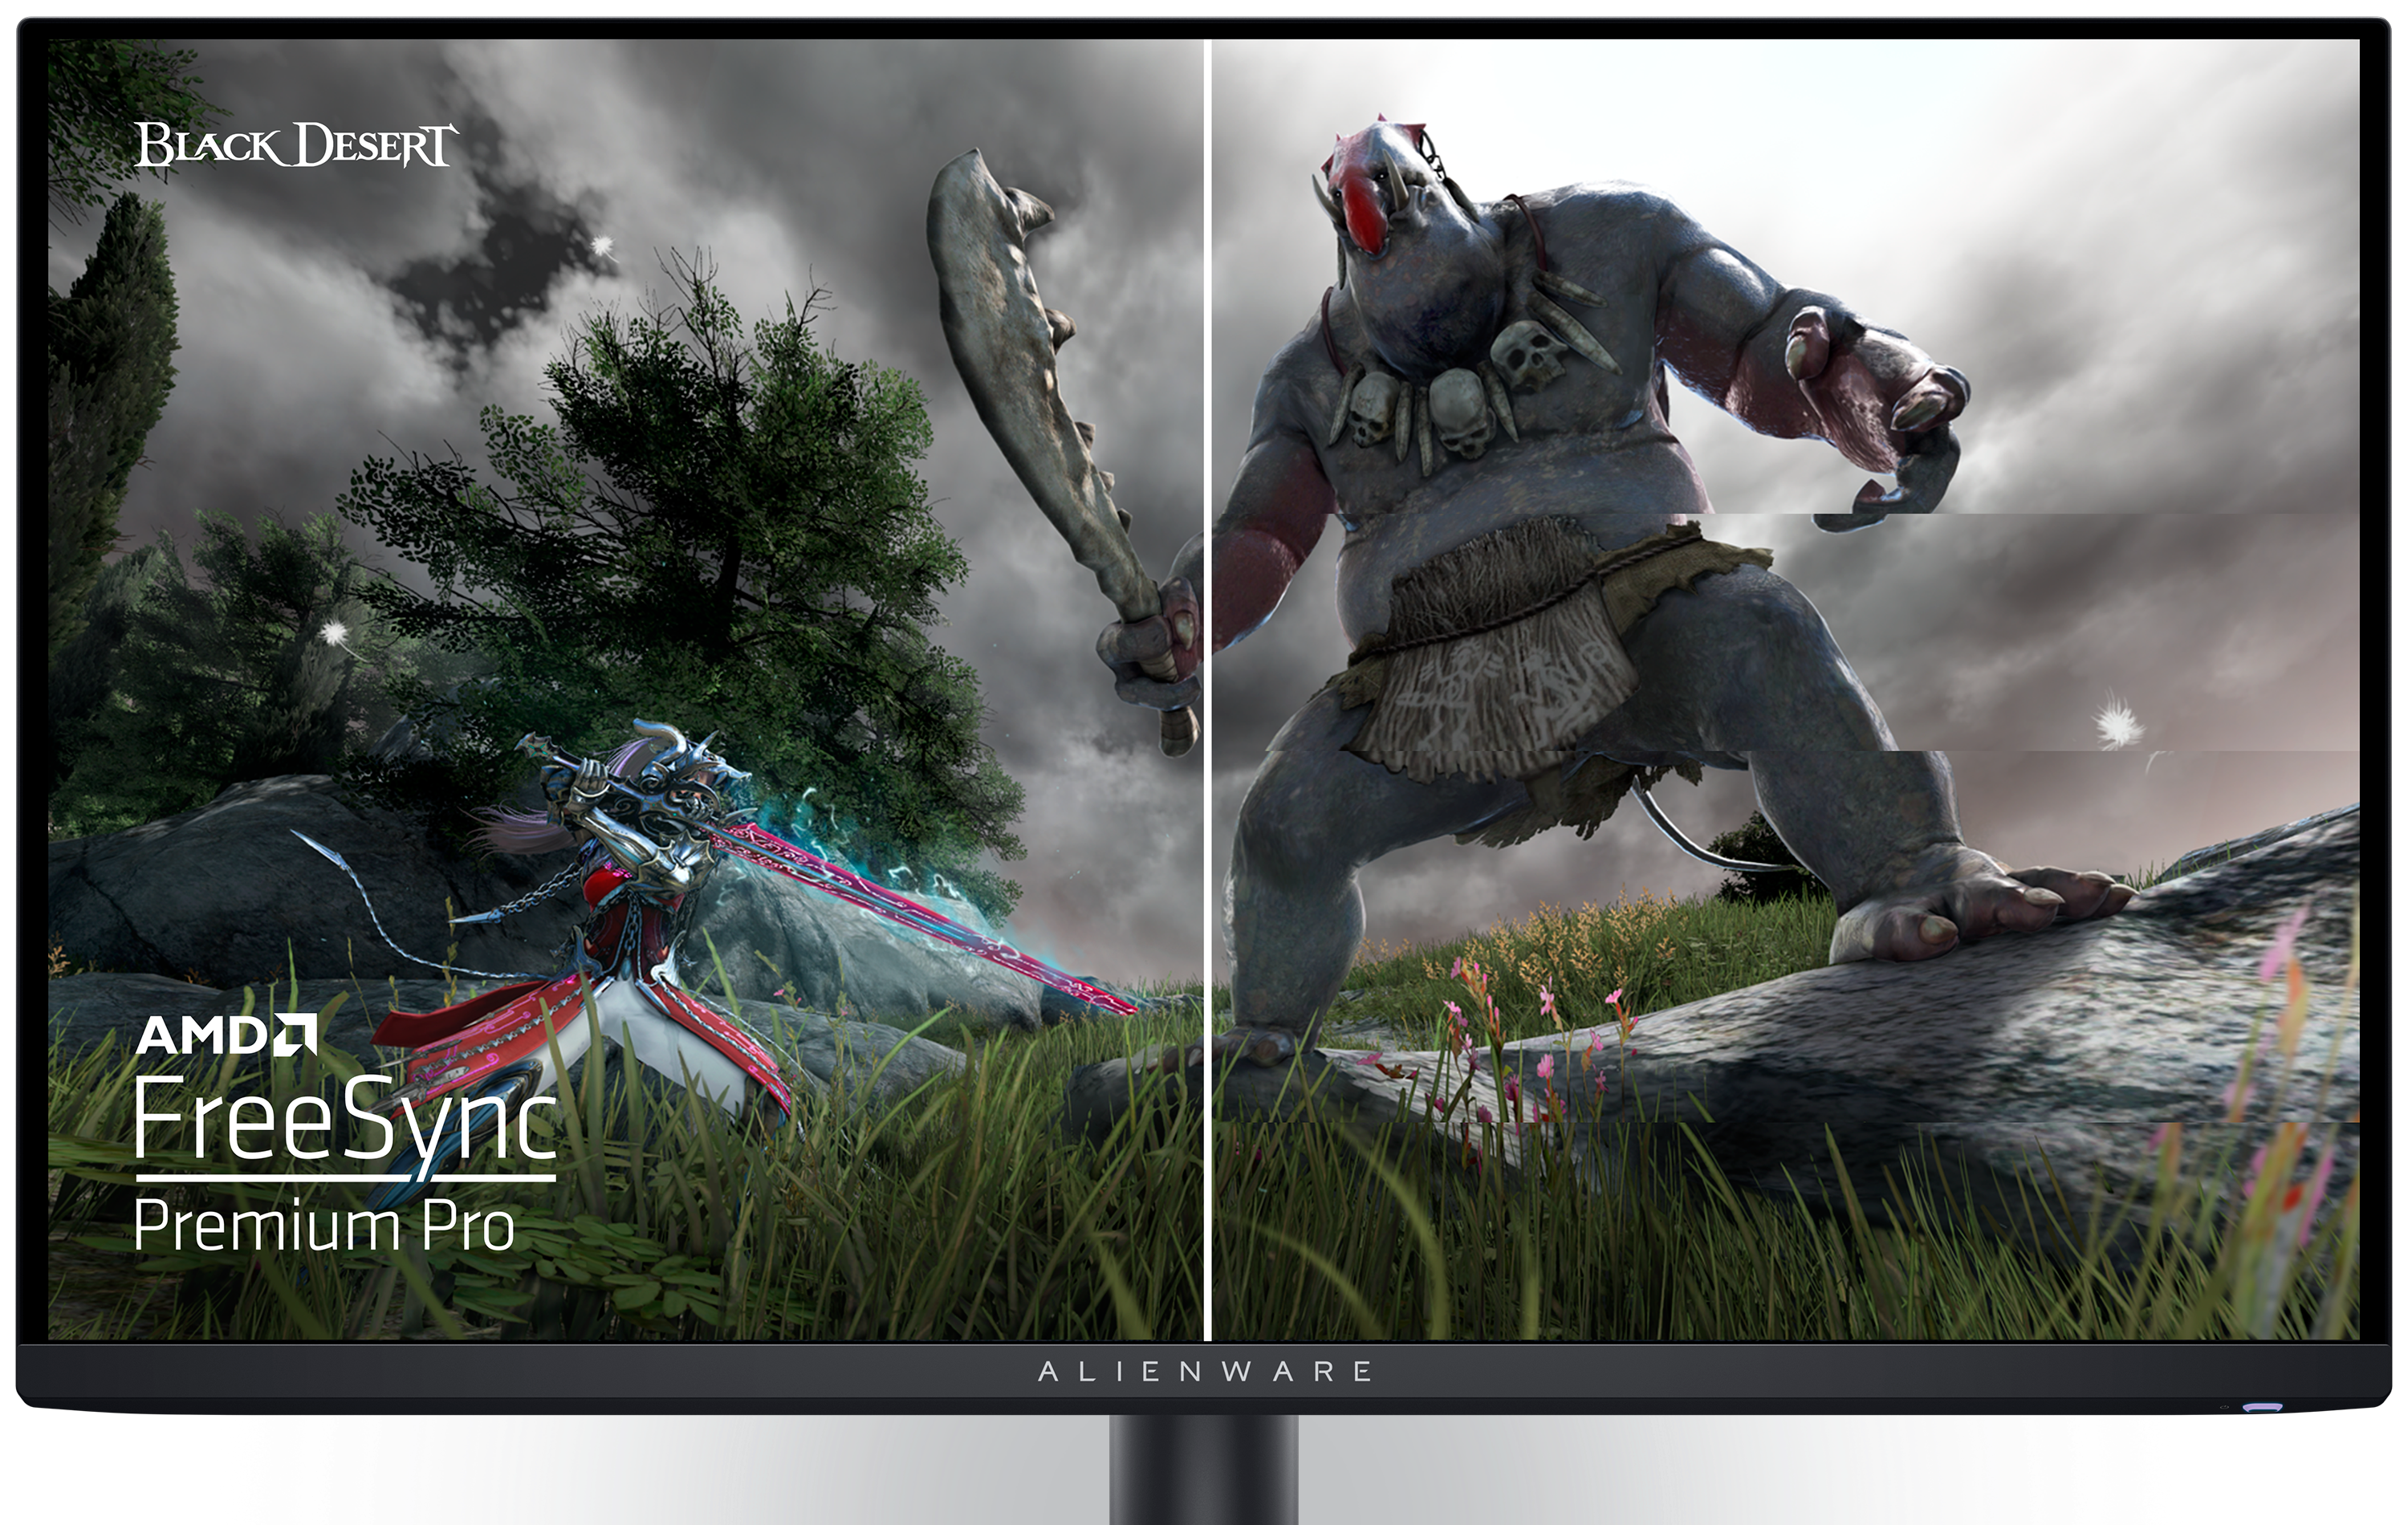 화면에 Black Desert 게임 이미지와 AMD 로고가 표시된 Dell AW2725DF 게이밍 모니터.